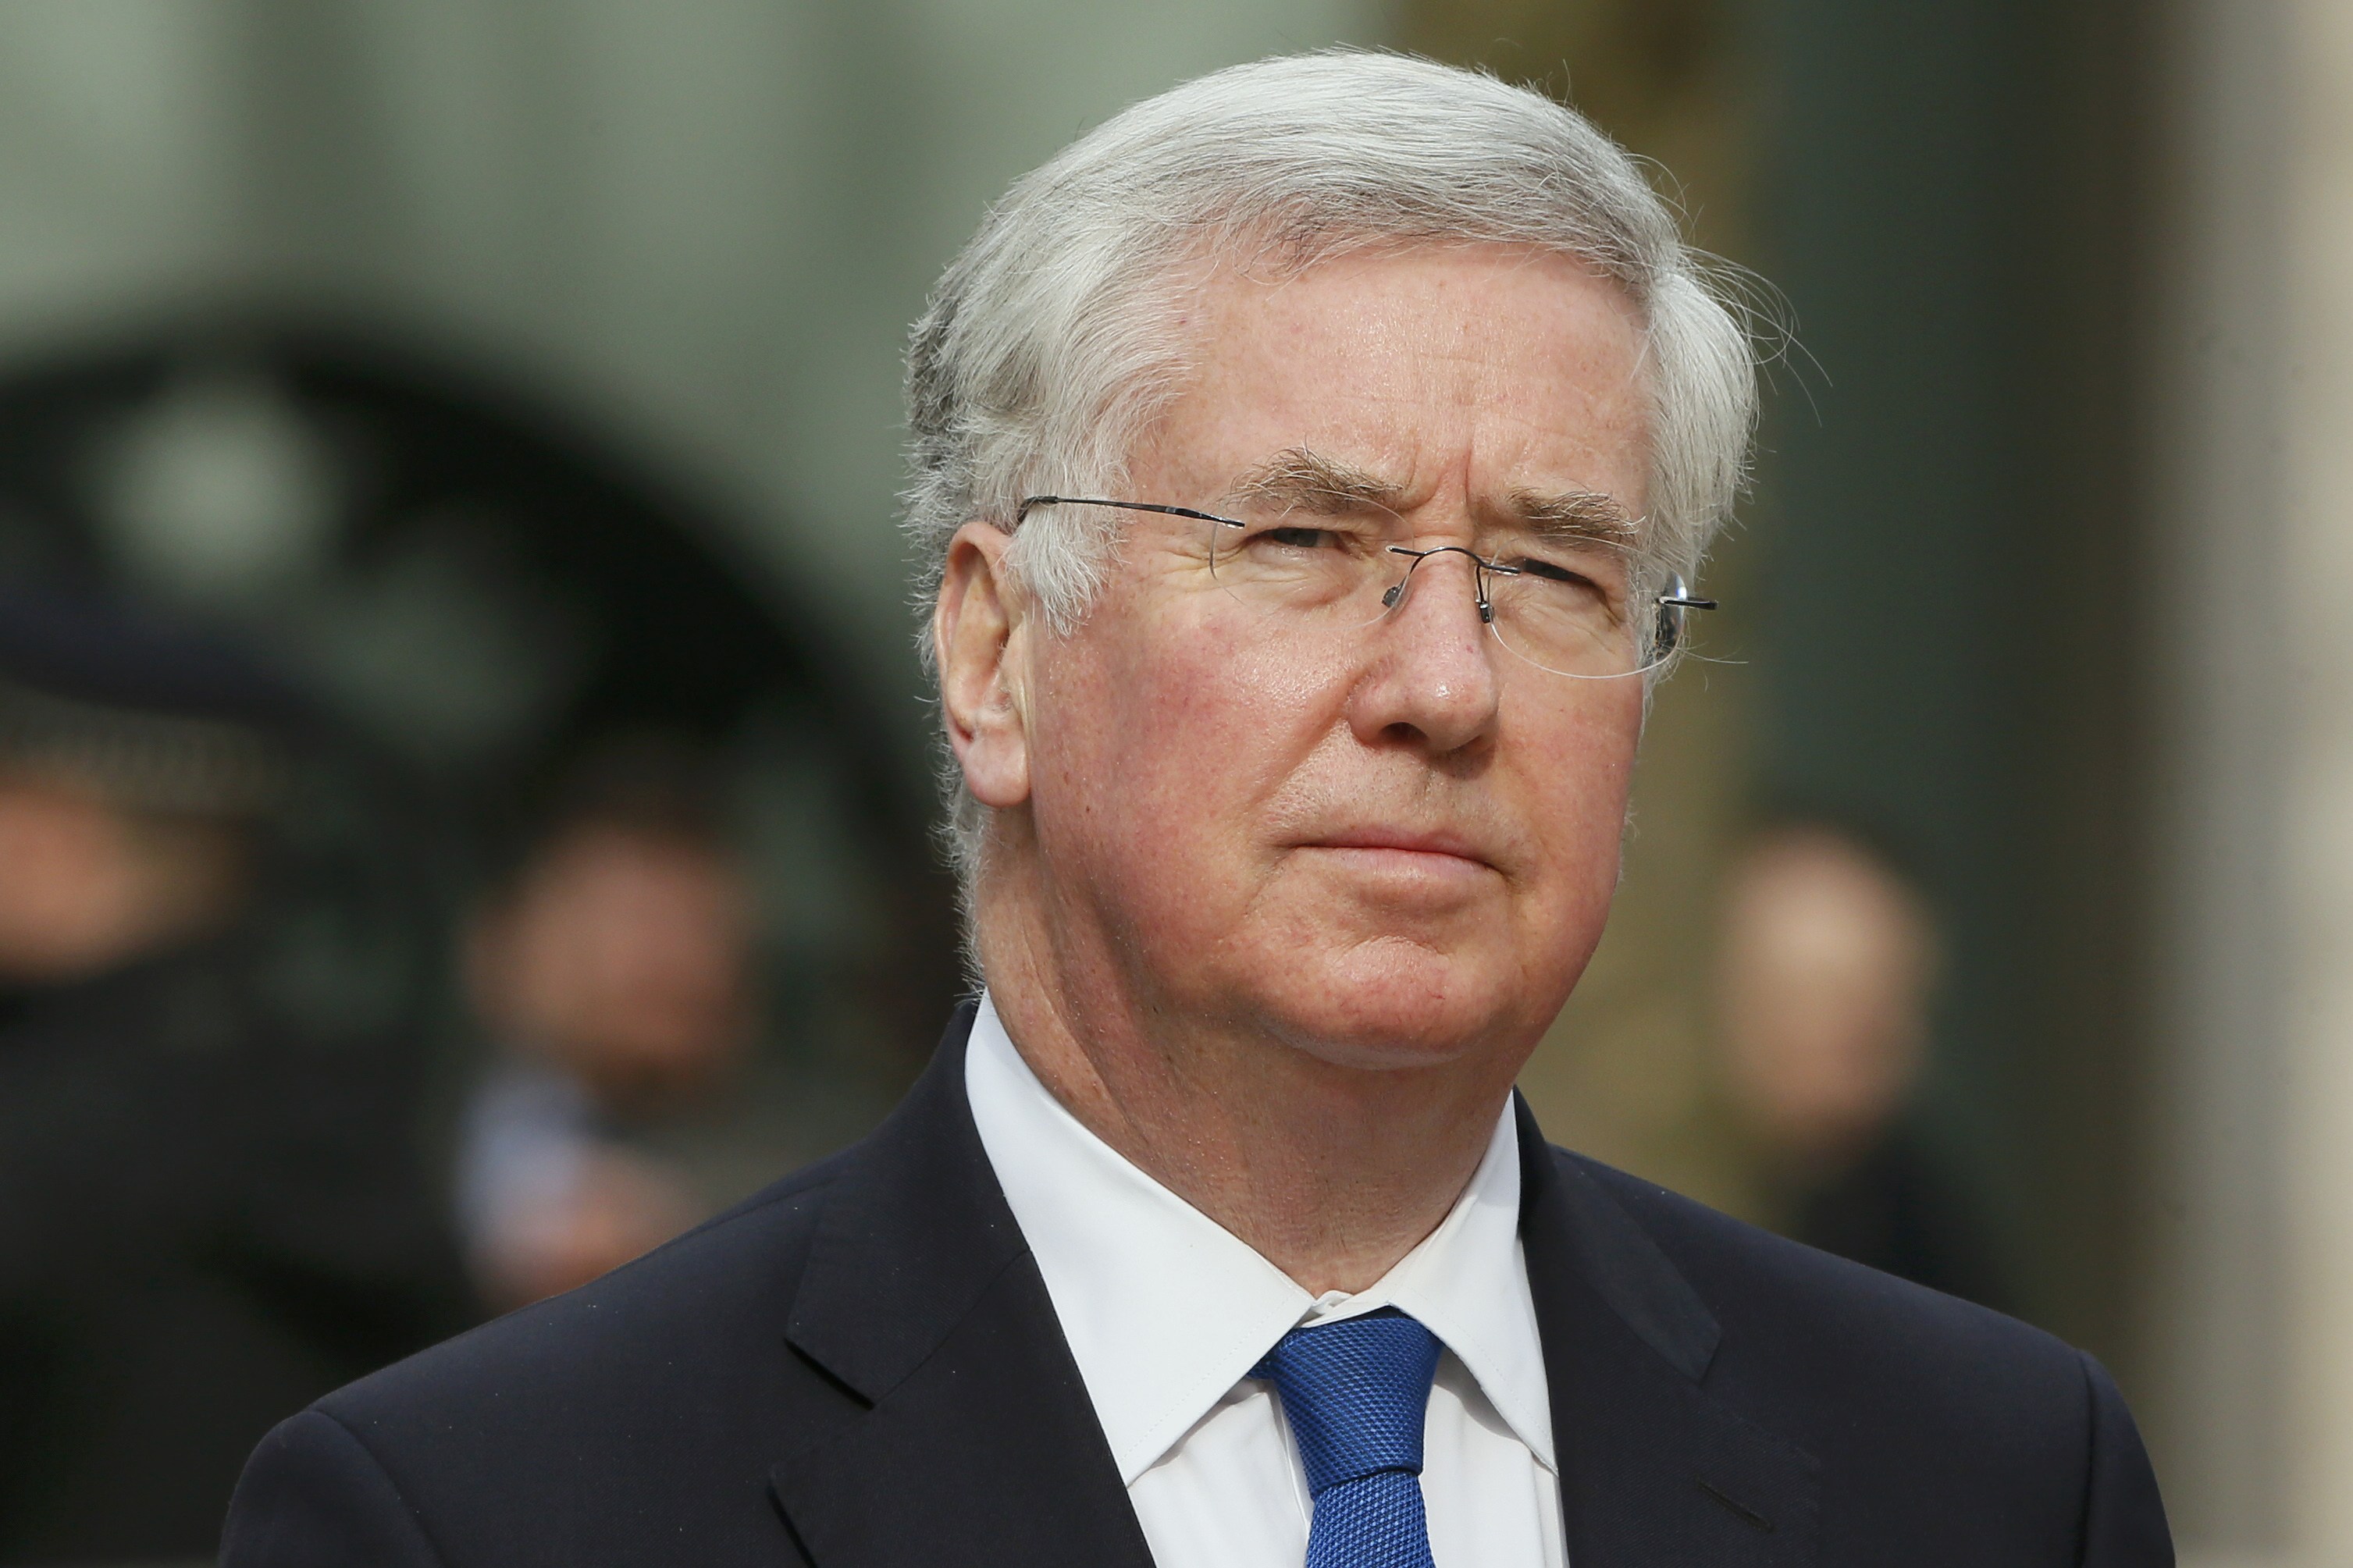 Dimite ministro de Defensa británico tras acusación de conducta inapropiada